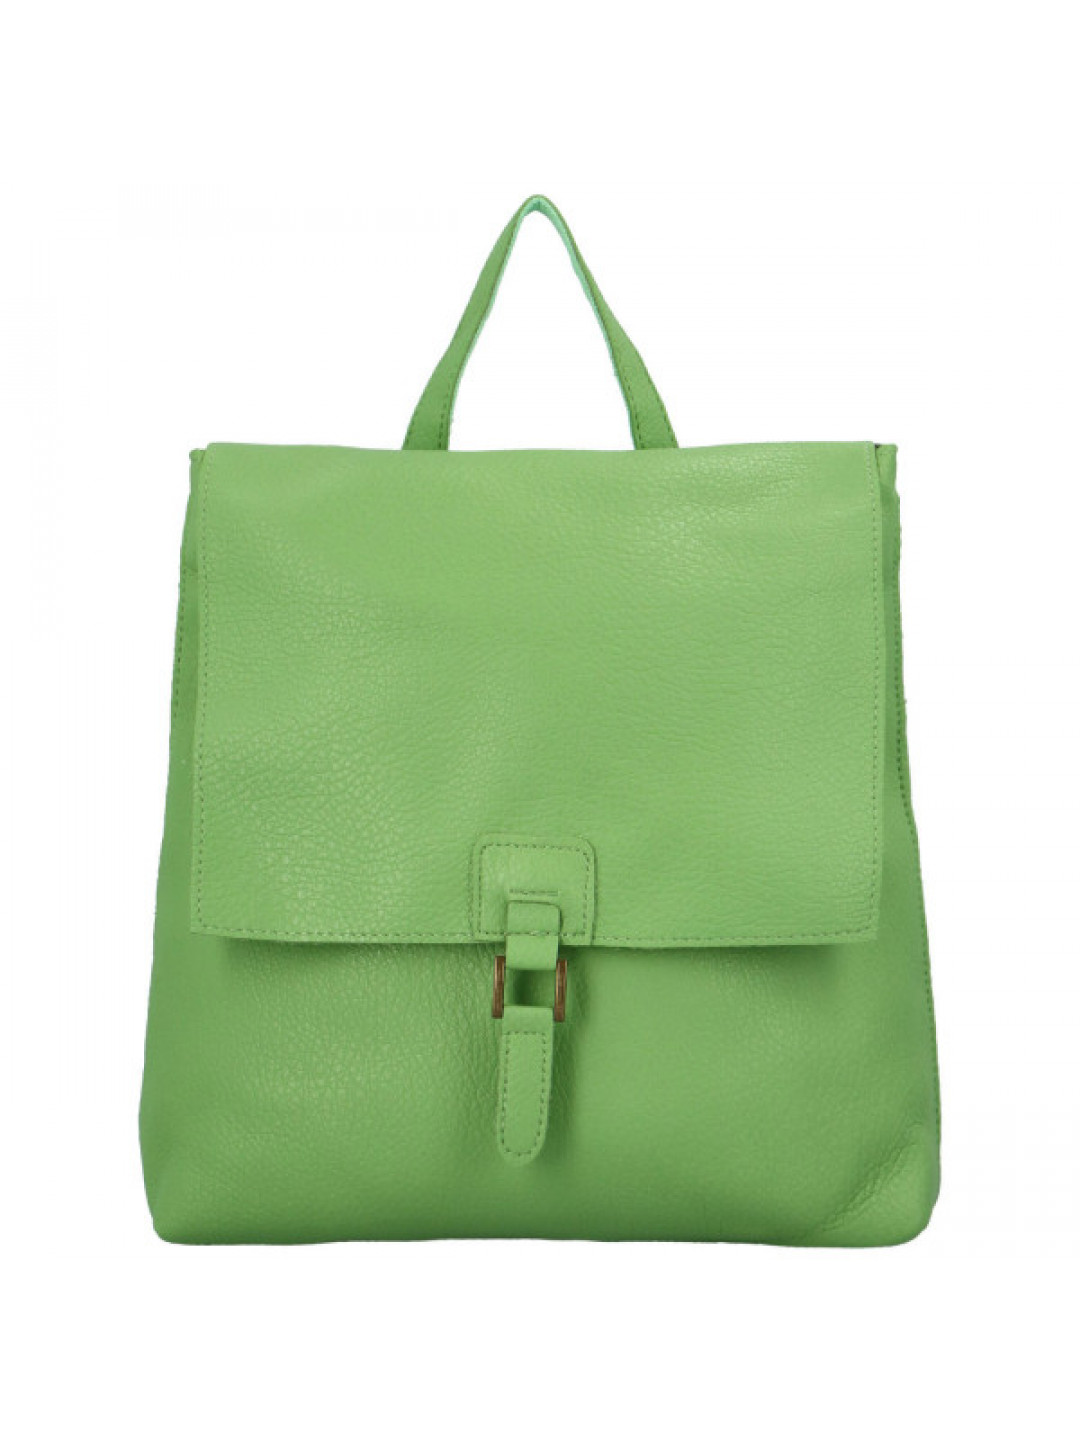 Dámský kabelko batůžek zelený – MaxFly Rubínas